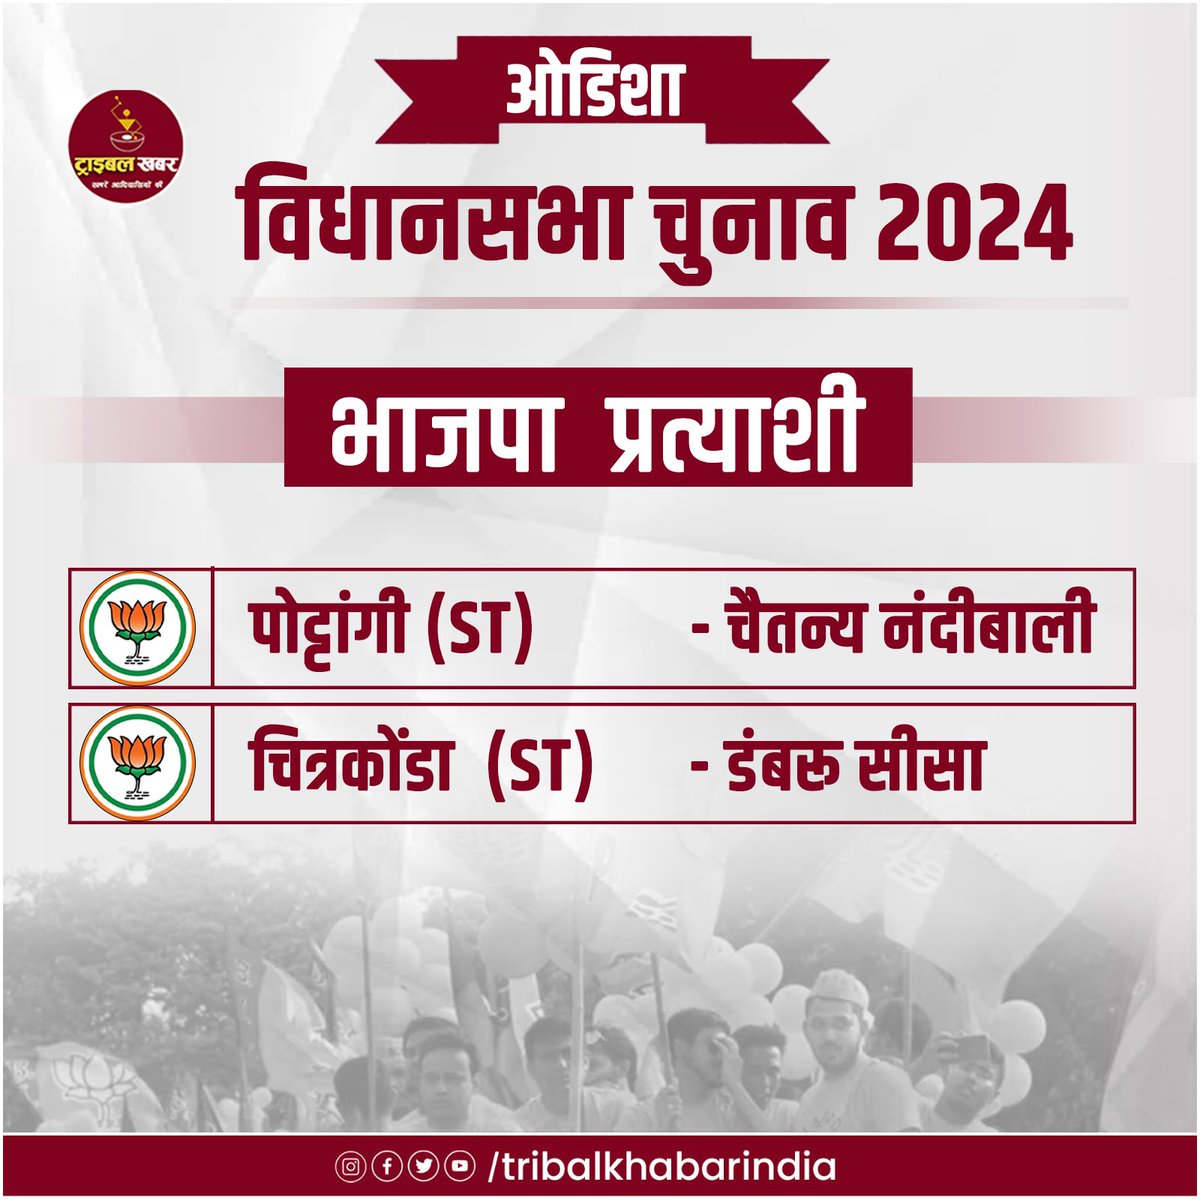 ओडिशा विधानसभा चुनाव 2024 को लेकर भाजपा ने अपने  प्रत्याशियों की घोषणा कर दी है.  पोट्टांगी (st) - चैतन्य नंदीबाली,
चित्रकोंडा (st) - डंबरू सीसा #election #tribal #tribalvote #OdishaElections2024 #vidhansabhaelection #odisha_vidhansabha #BJP_Odisha_list #tribal #tribalkhabar